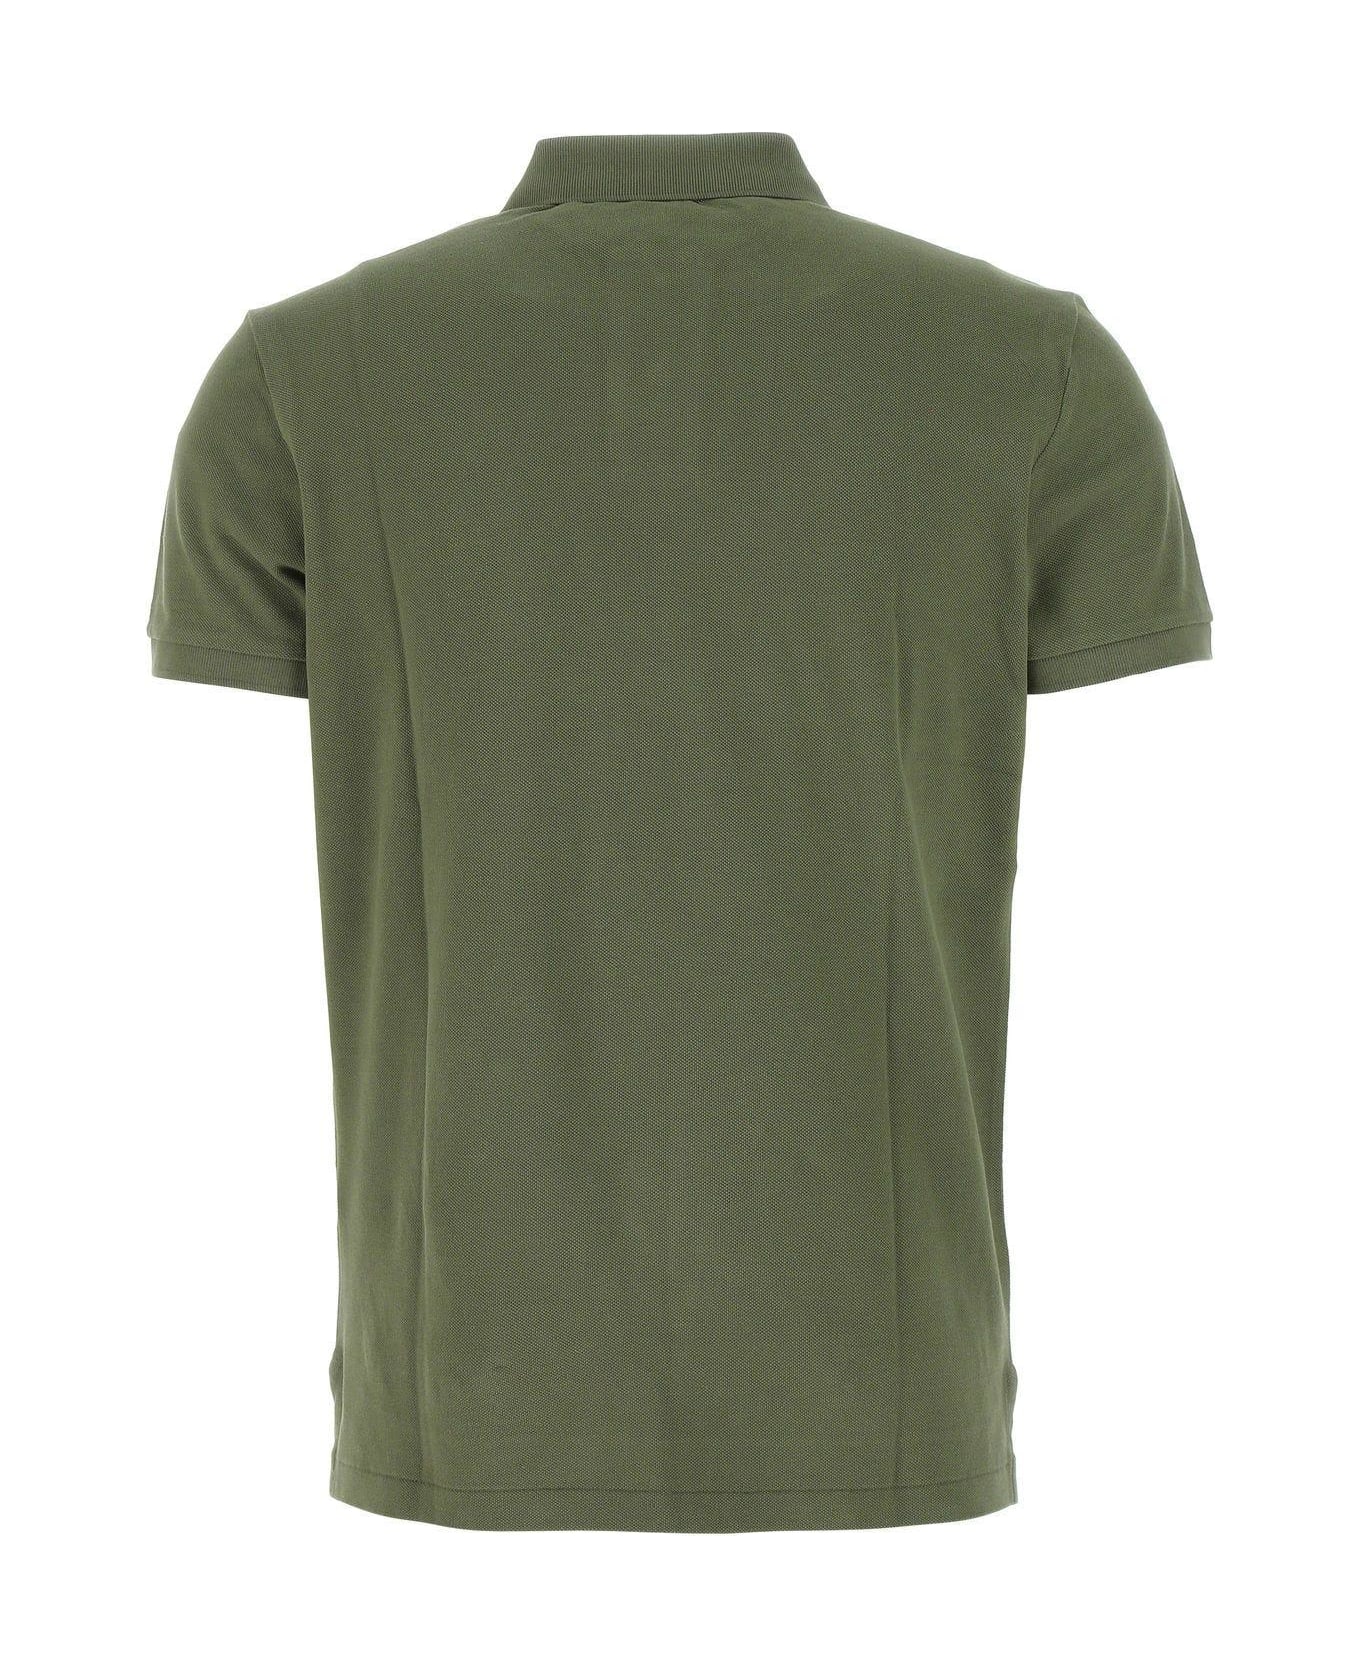 Ralph Lauren Army Green Piquet Polo Shirt - Medium Green